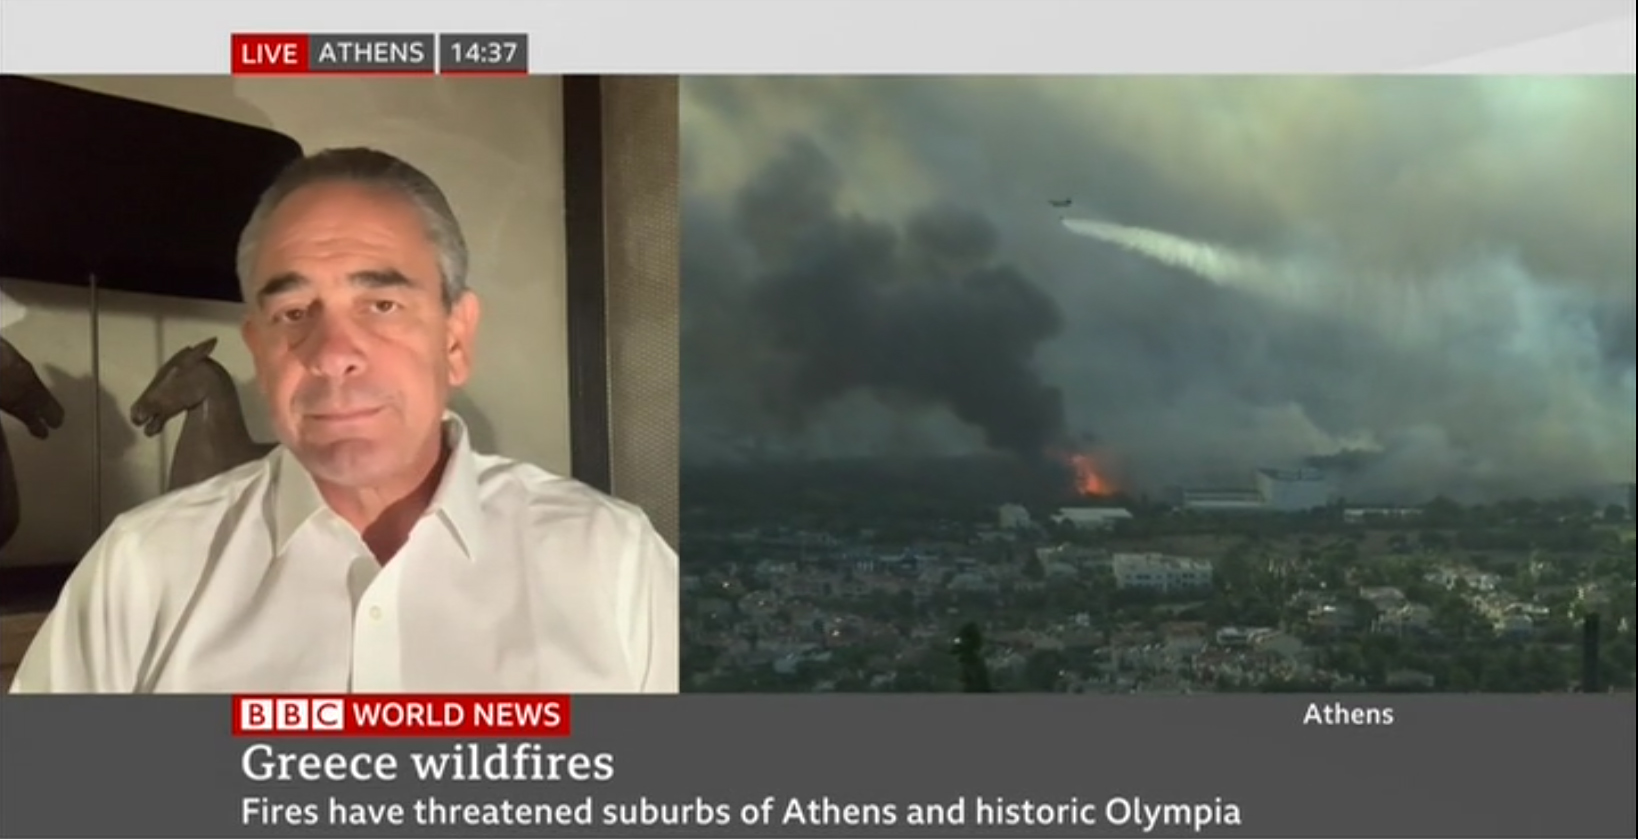 Συνέντευξη του Κ. Μίχαλου στο ΒBC για τις καταστροφικές πυρκαγιές 5.8.2021